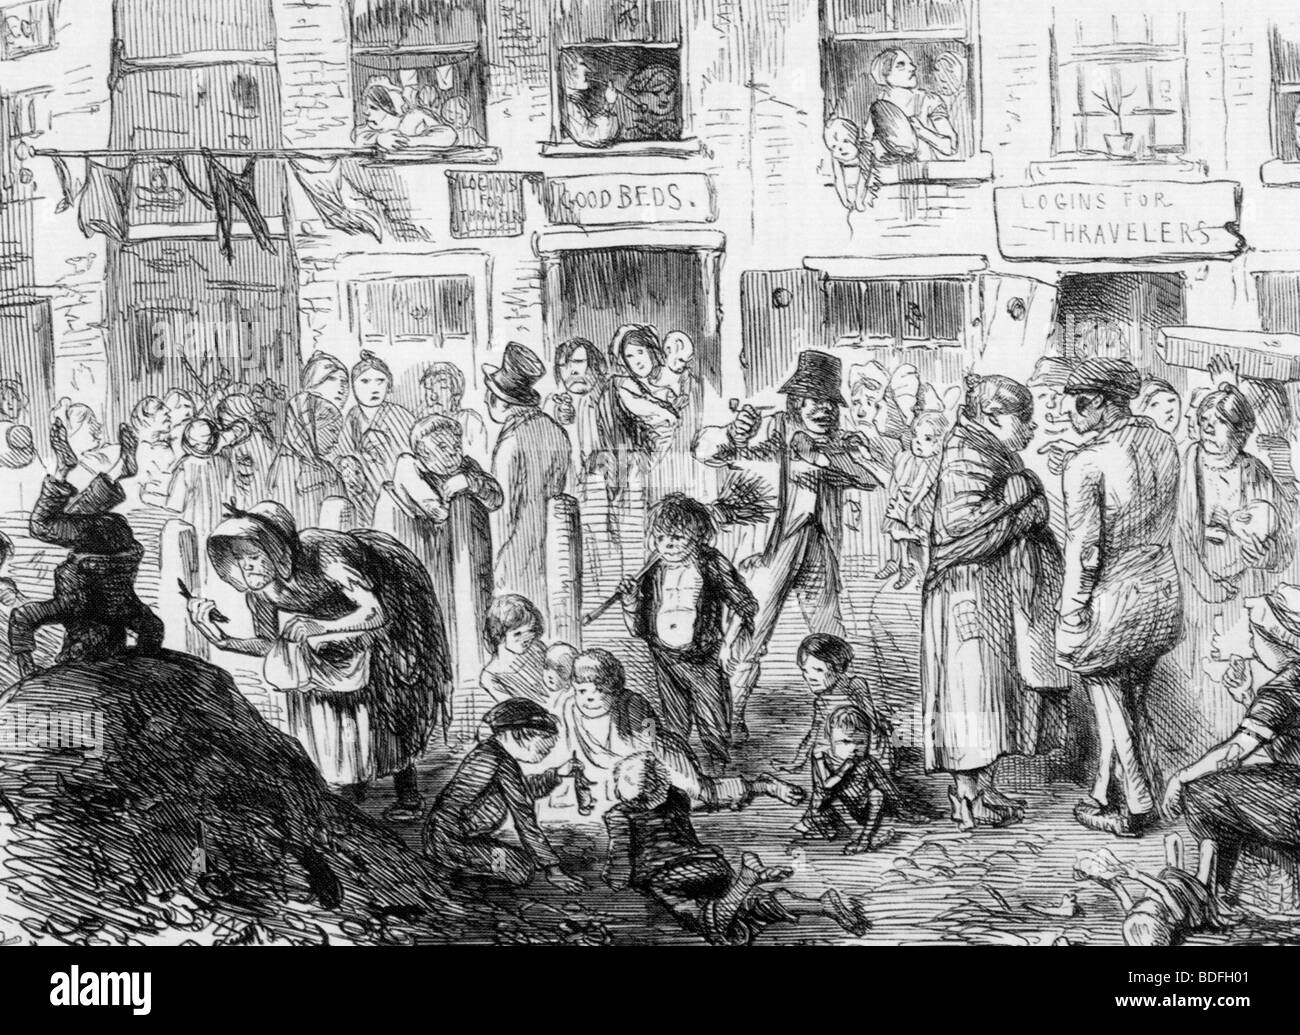 AN den Hof des Königs CHOLERA - Mitte des 19. Jahrhunderts Cartoon zeigt die überfüllten Lebensbedingungen die Cholera verbreiten halfen Stockfoto